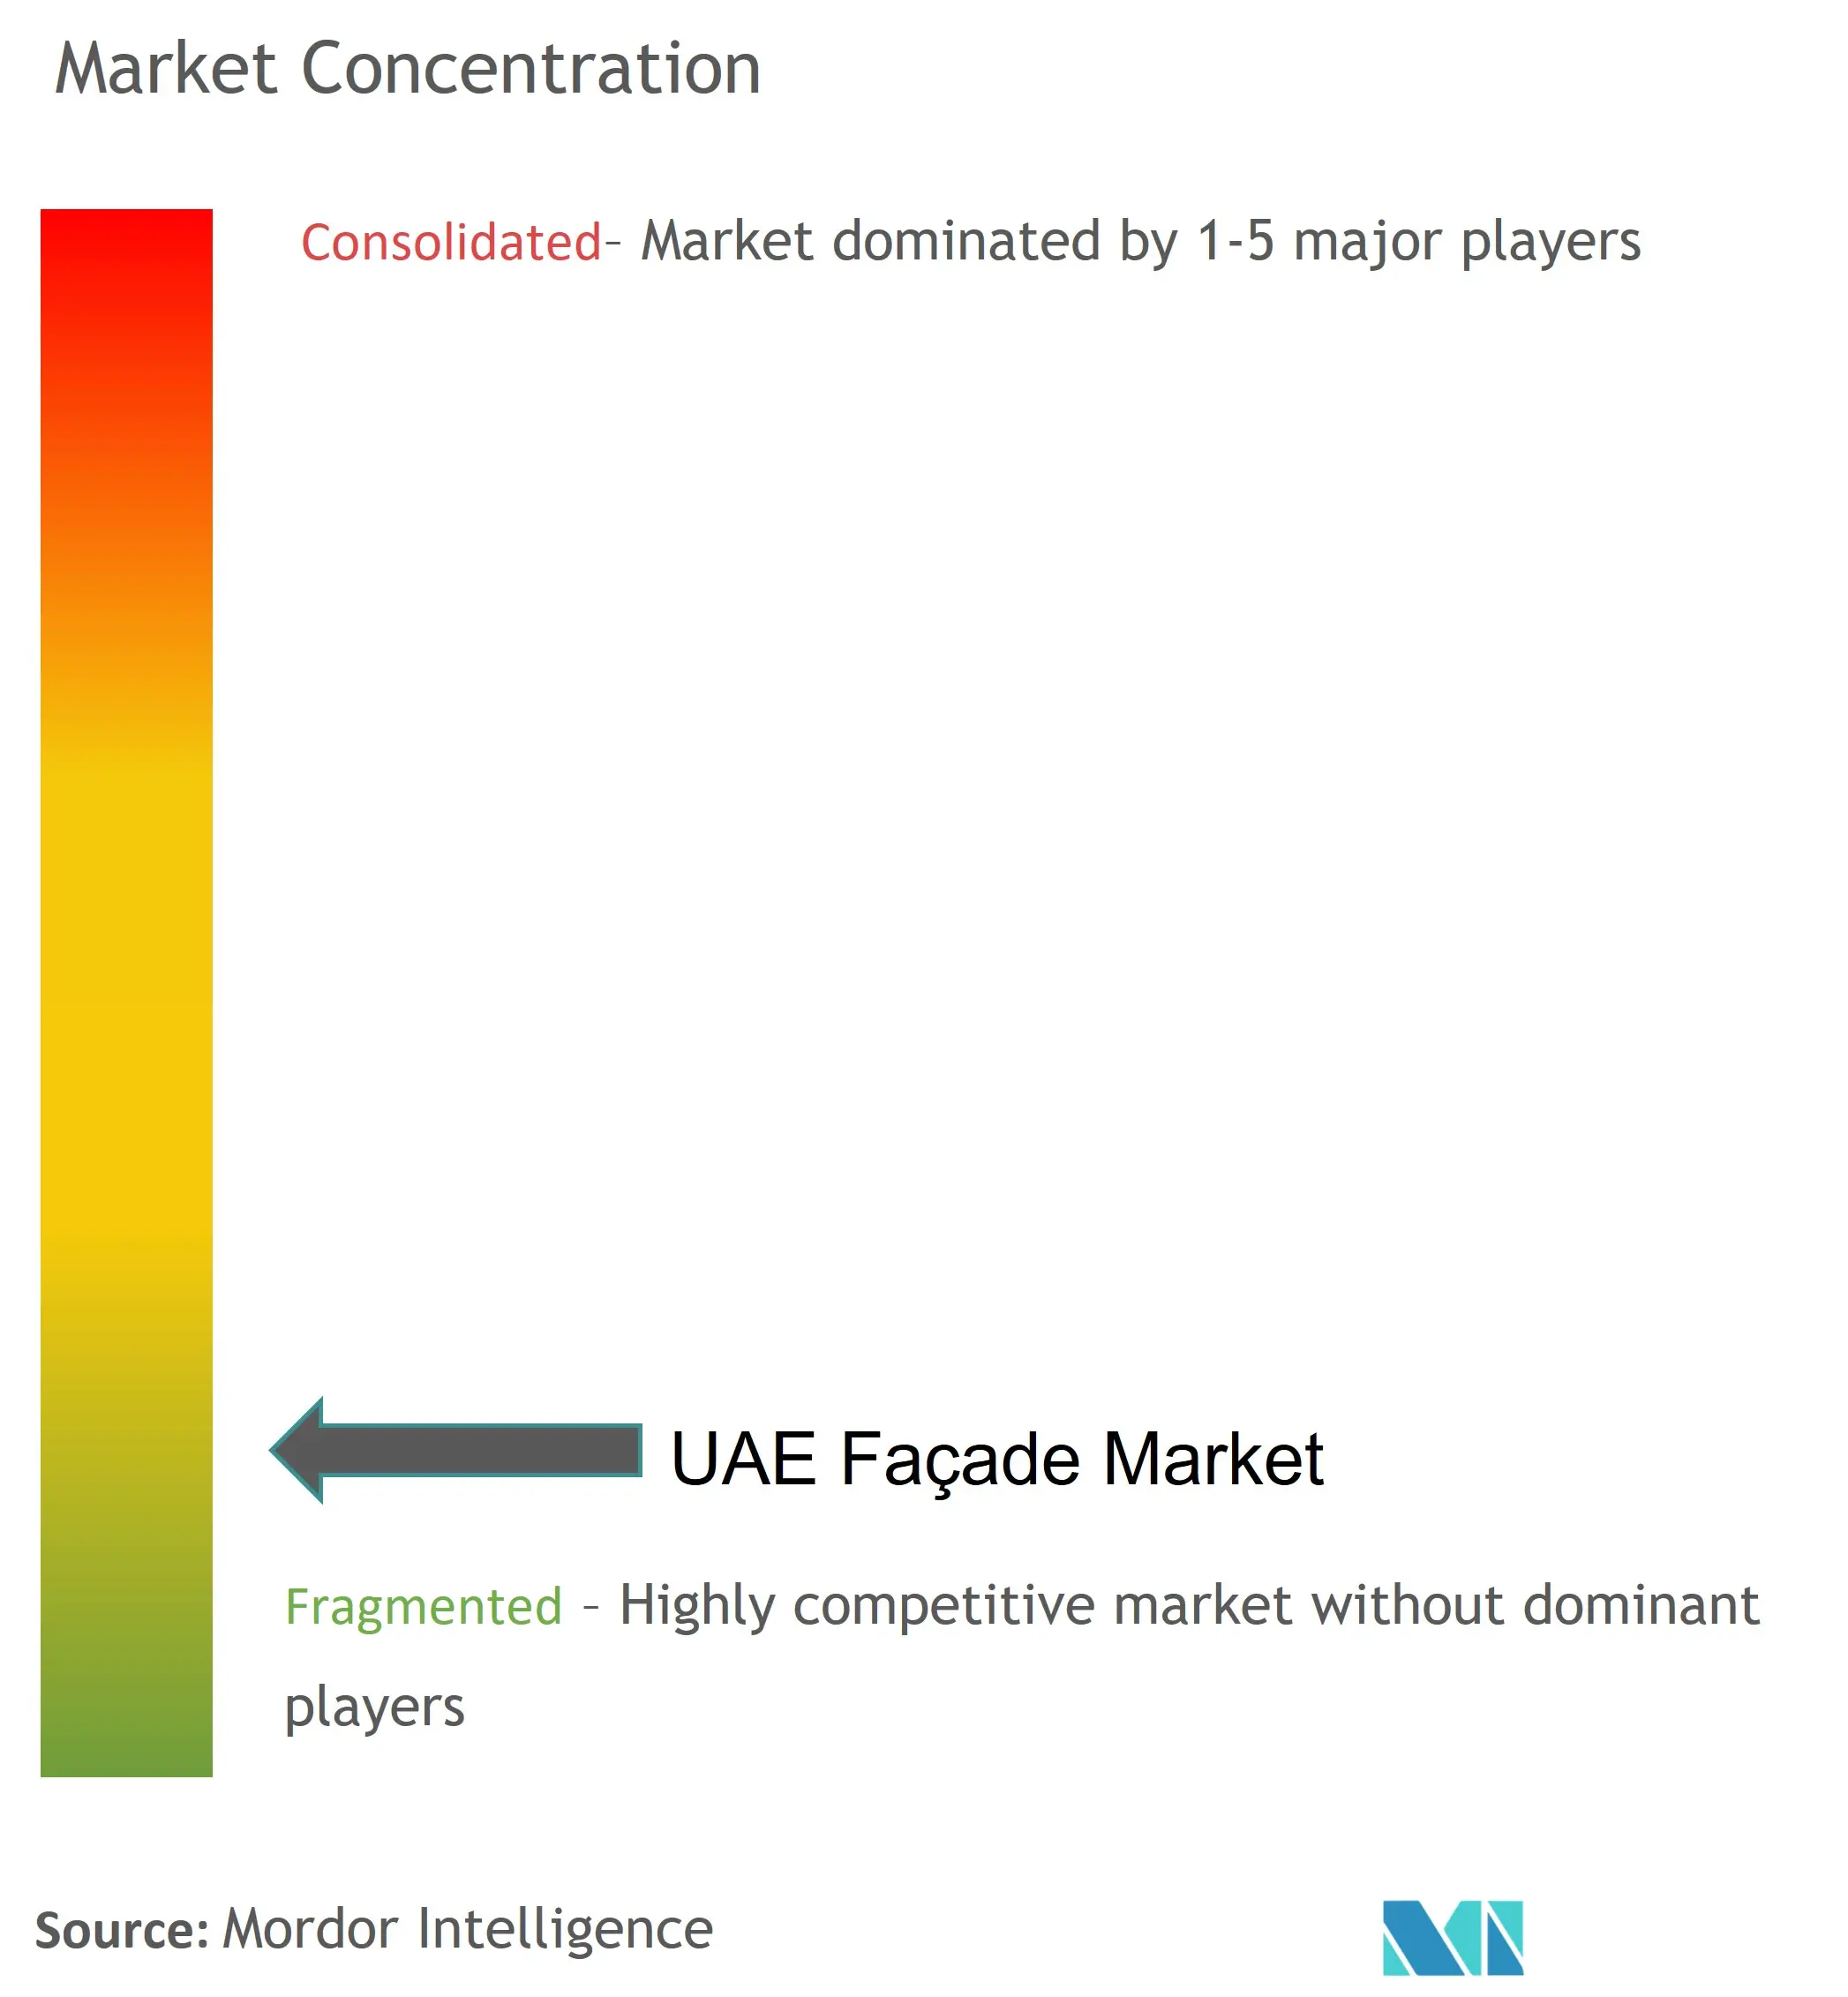 UAE Facade Market Concentration